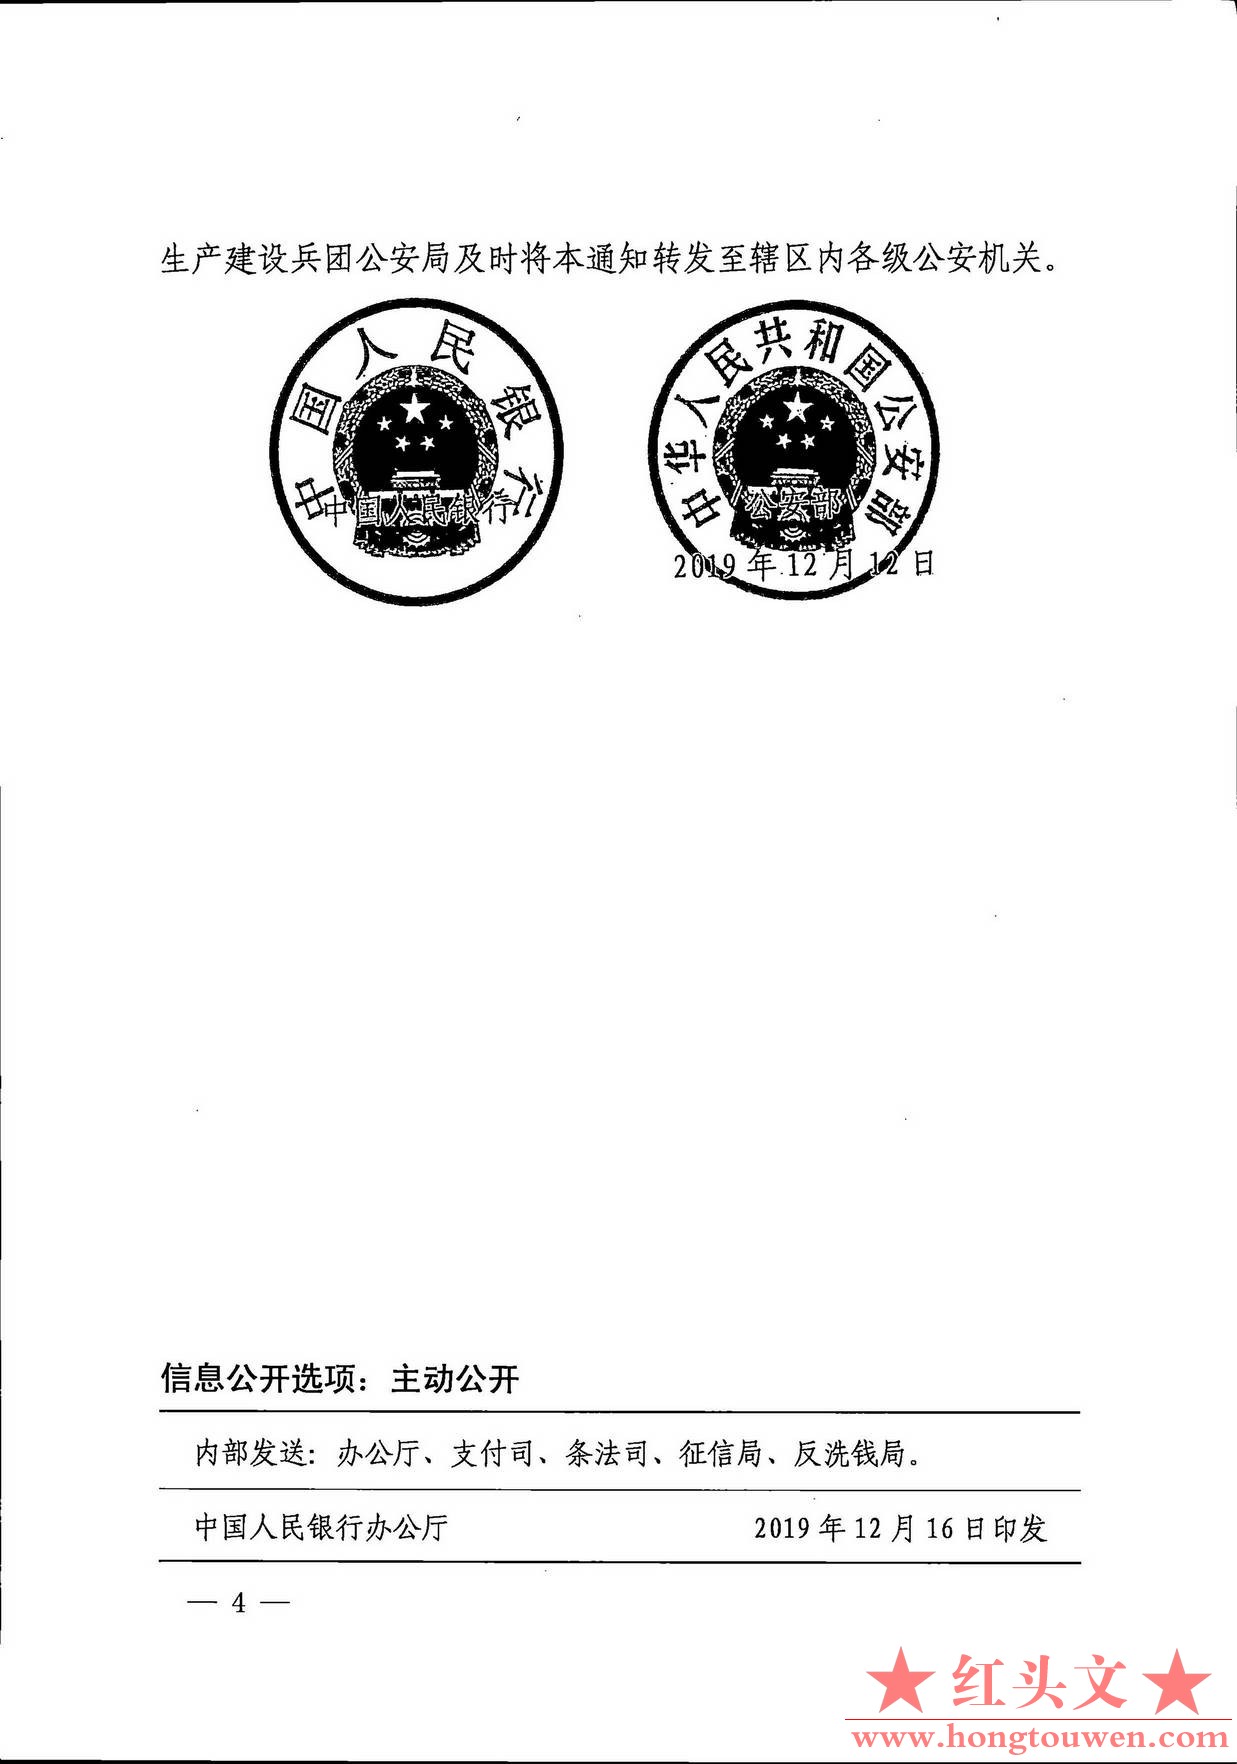 银发[2019]304号-中国人民银行 公安部对买卖银行卡或账户的个人实施惩戒的通知_页面_4.jpg